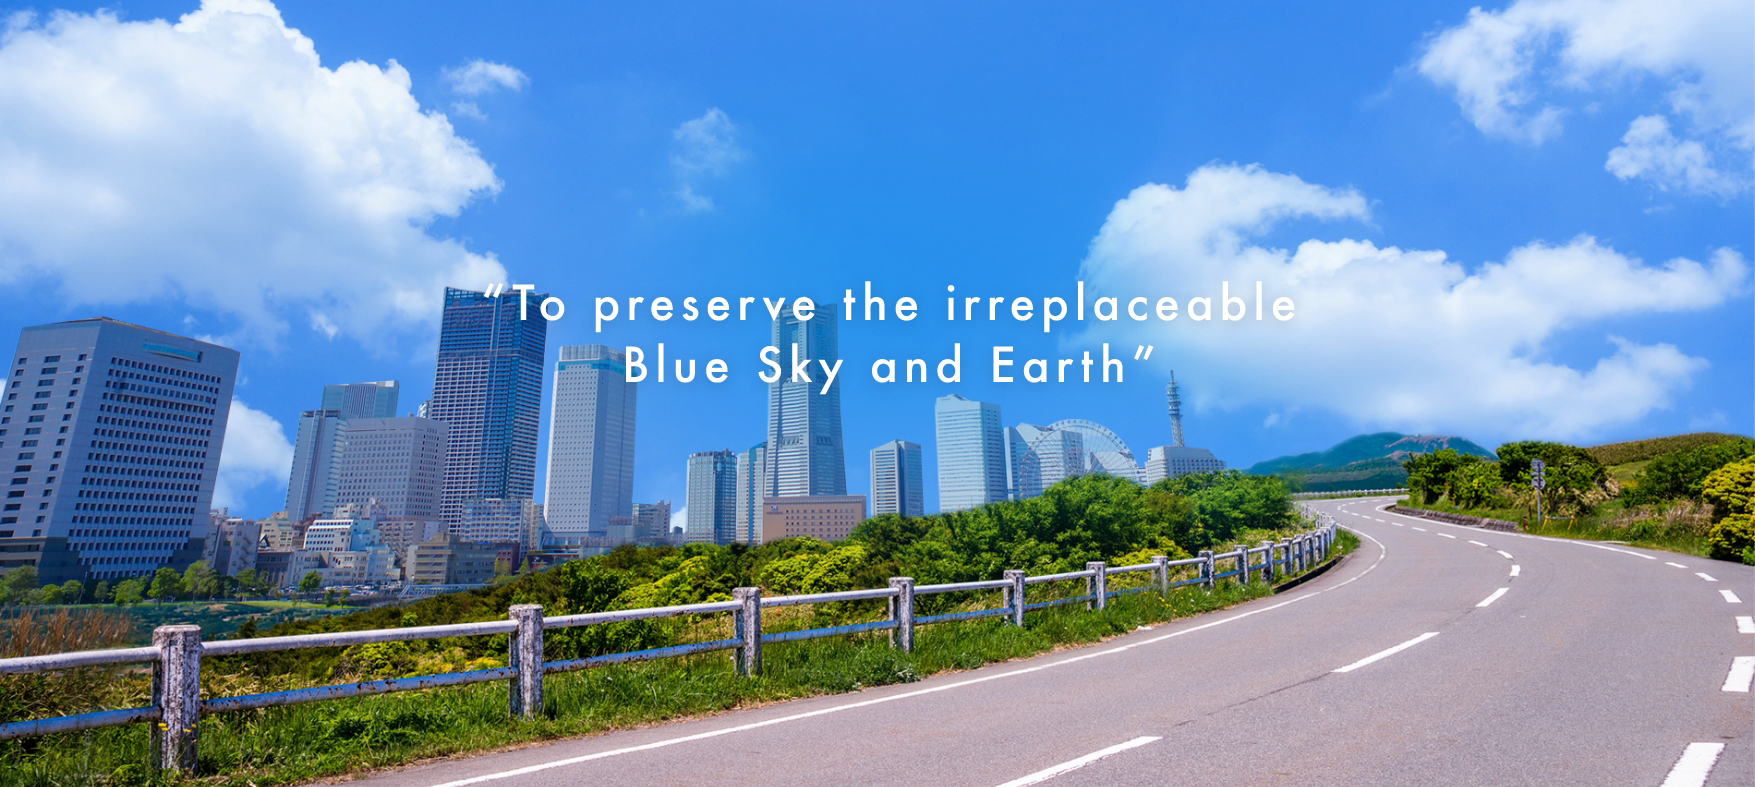 青い空を、もっと、もっと世界中に広げたい